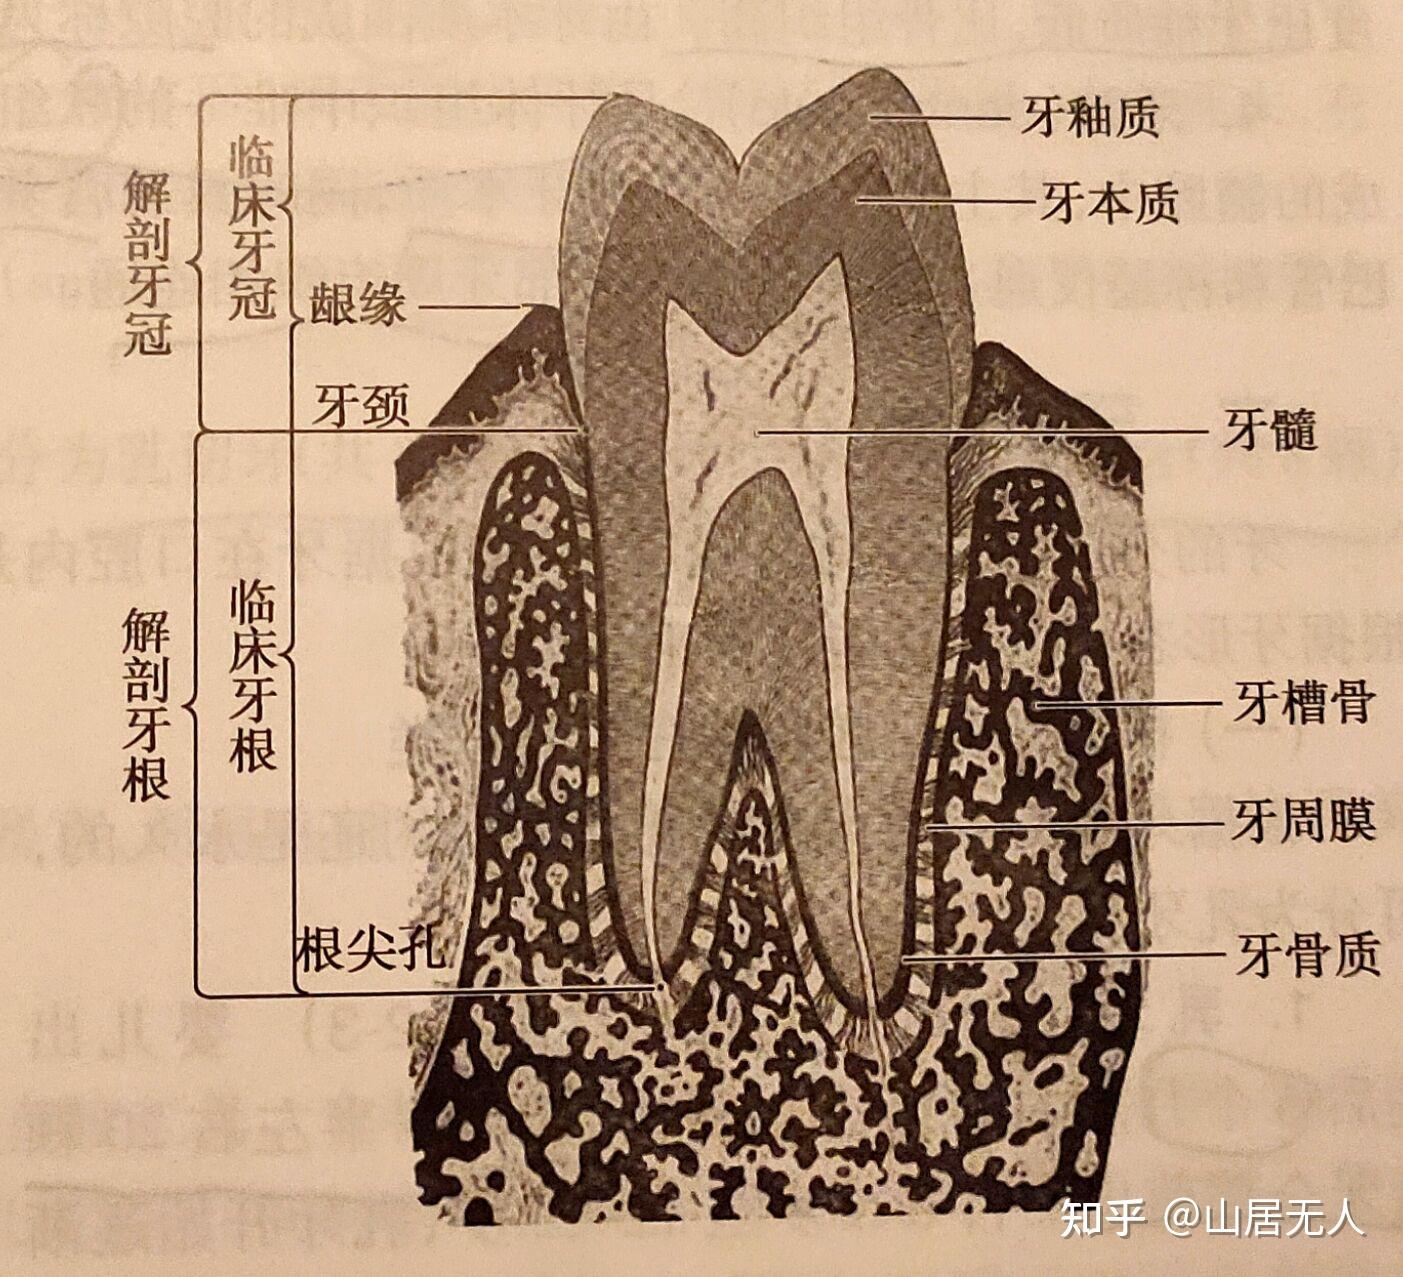 左下6牙齿解剖形态图片